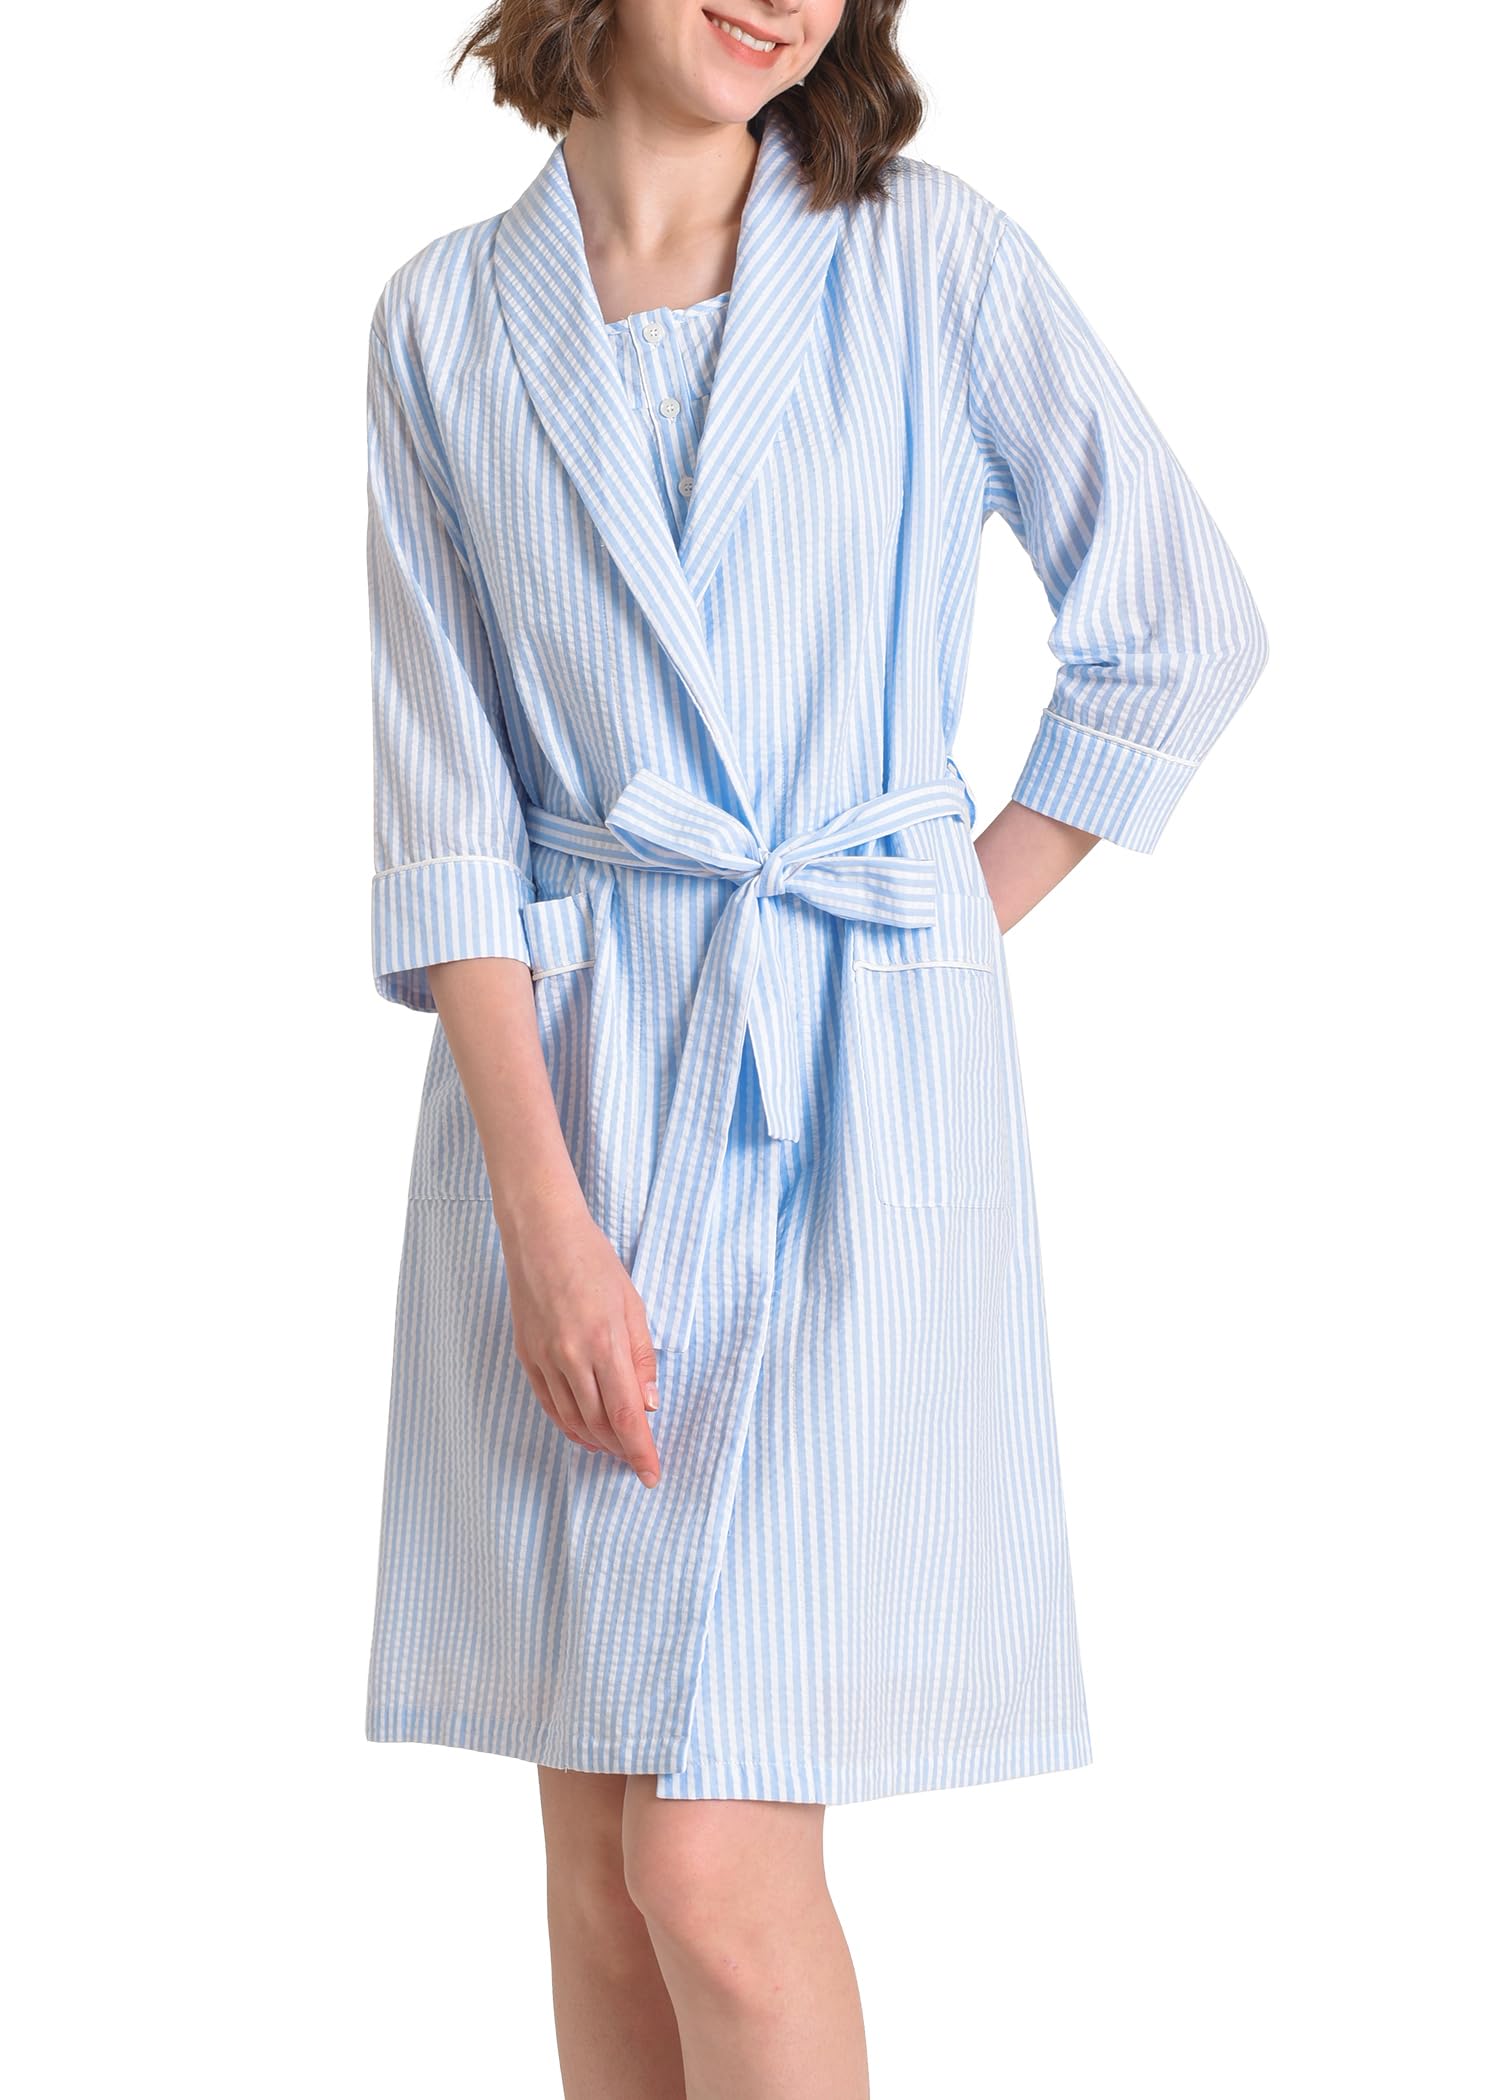 Women's Cotton Nightgown with Matching Robe Set - Latuza